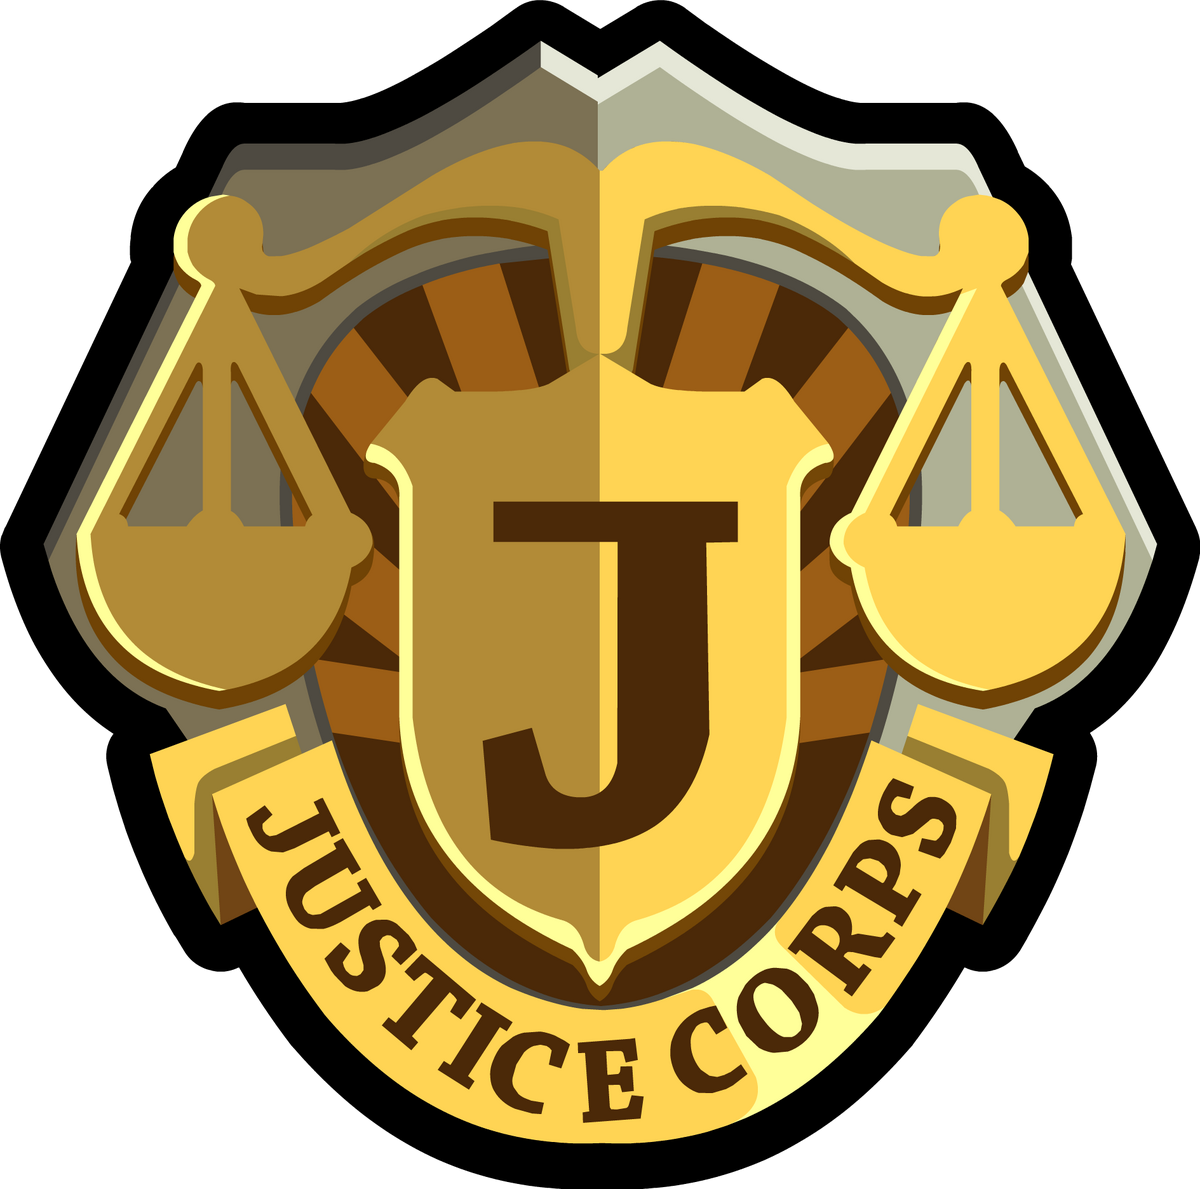 Department of Justice. ICJ logo. Justice case